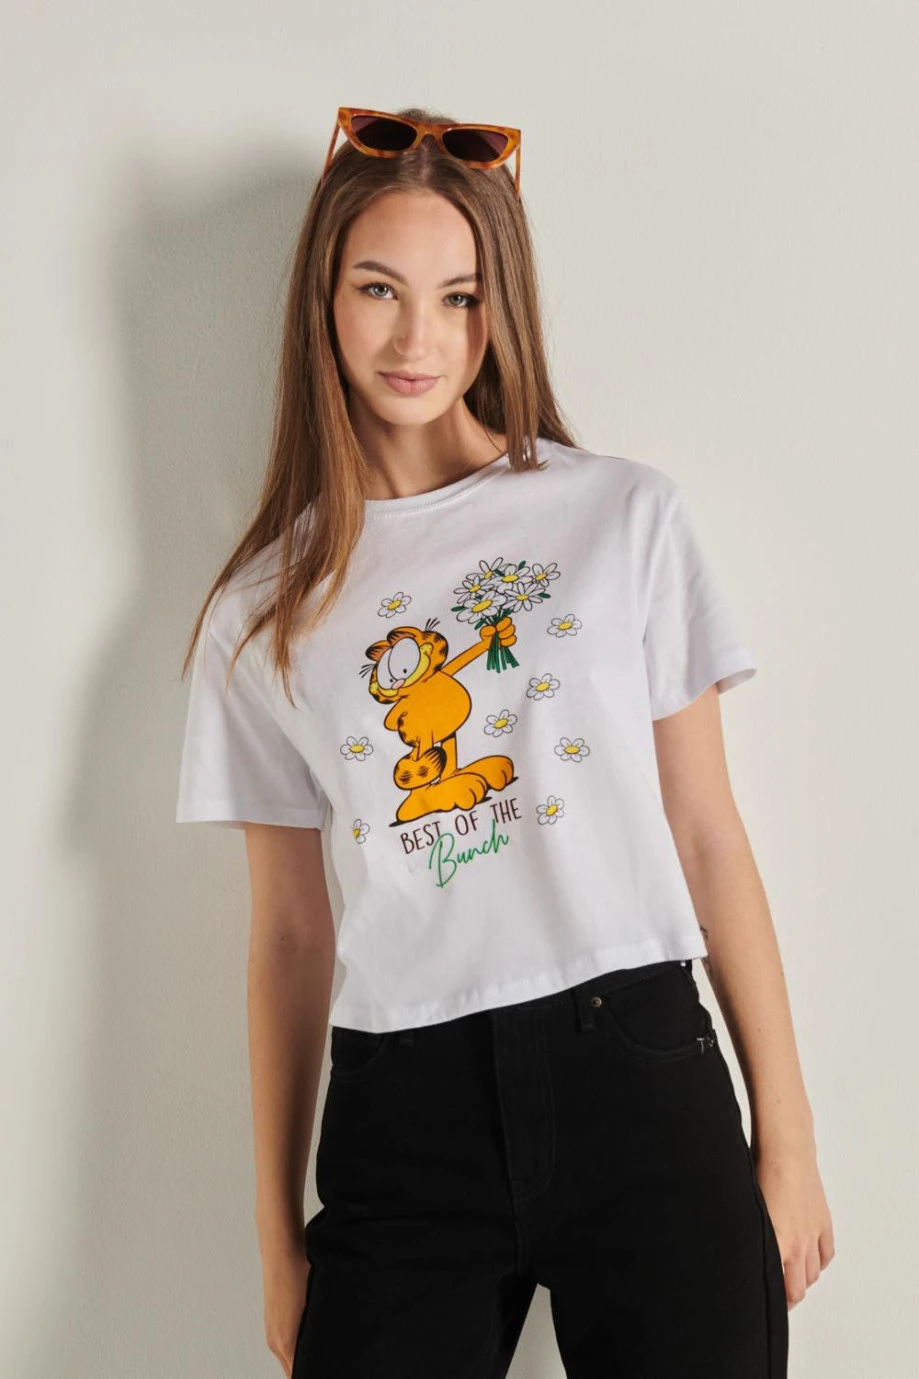 Camiseta crop top blanca manga corta y diseño de Garfield